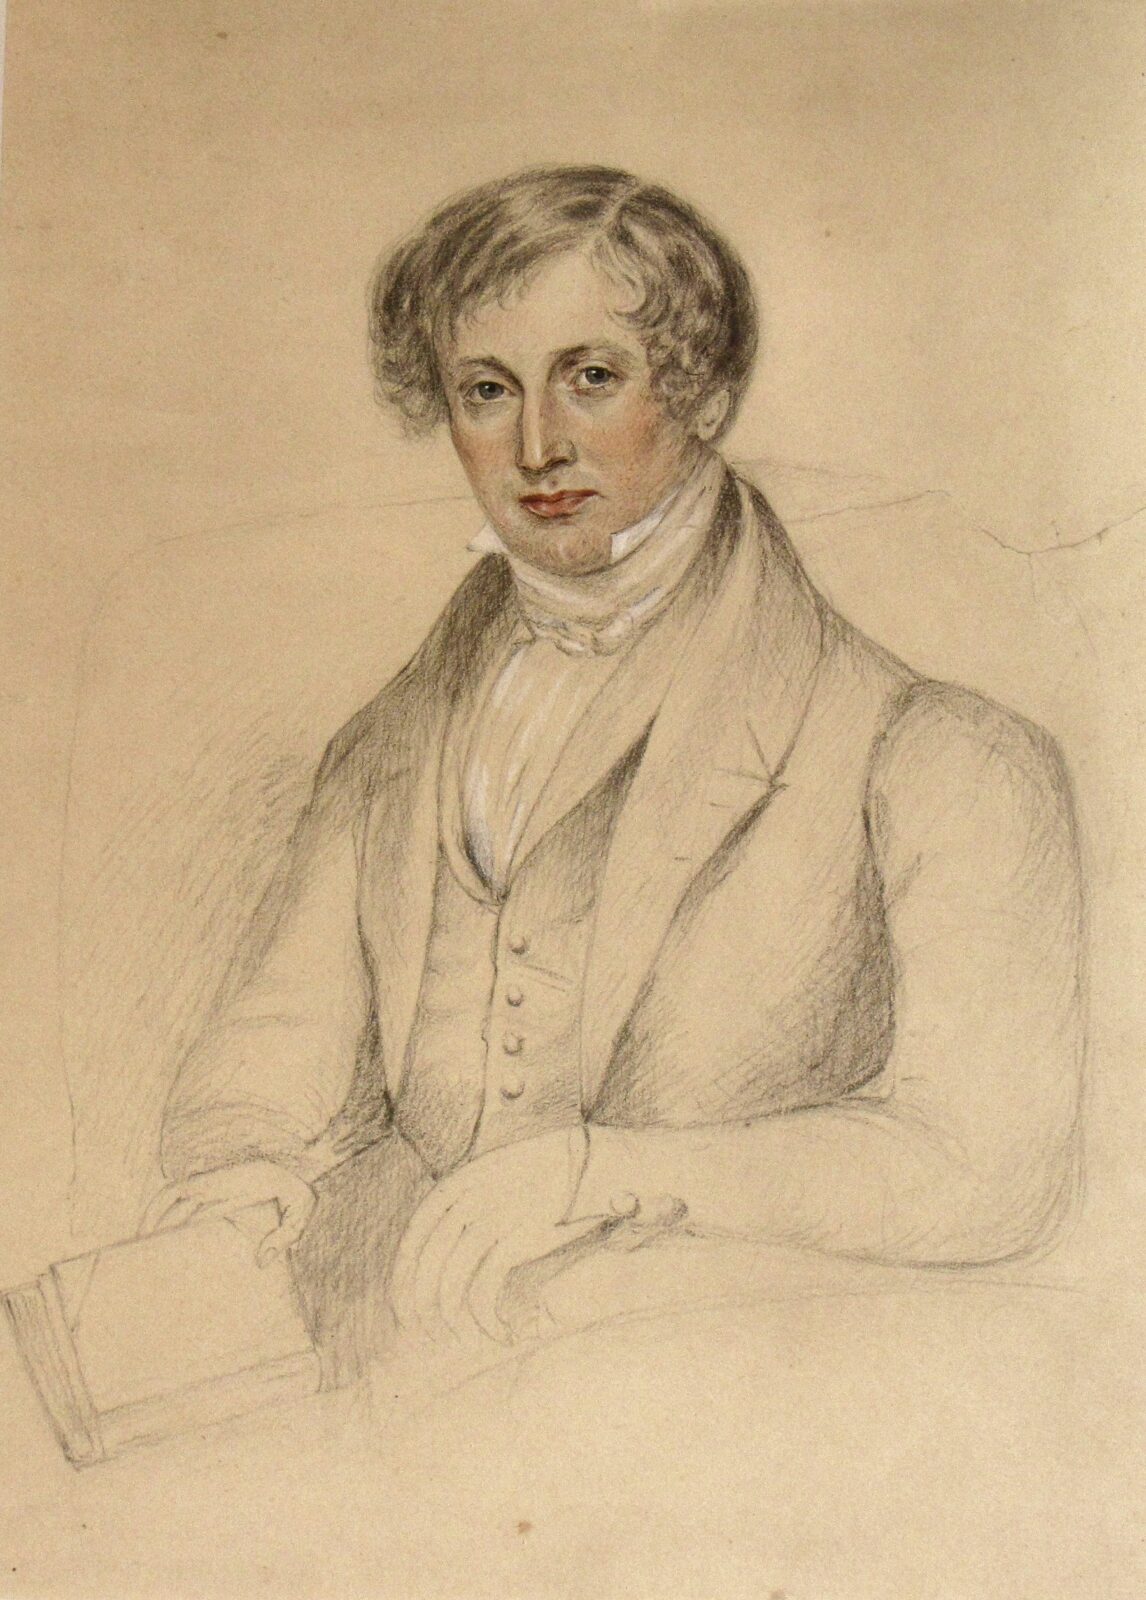 Pencil sketch of James Edward Austen-Leigh